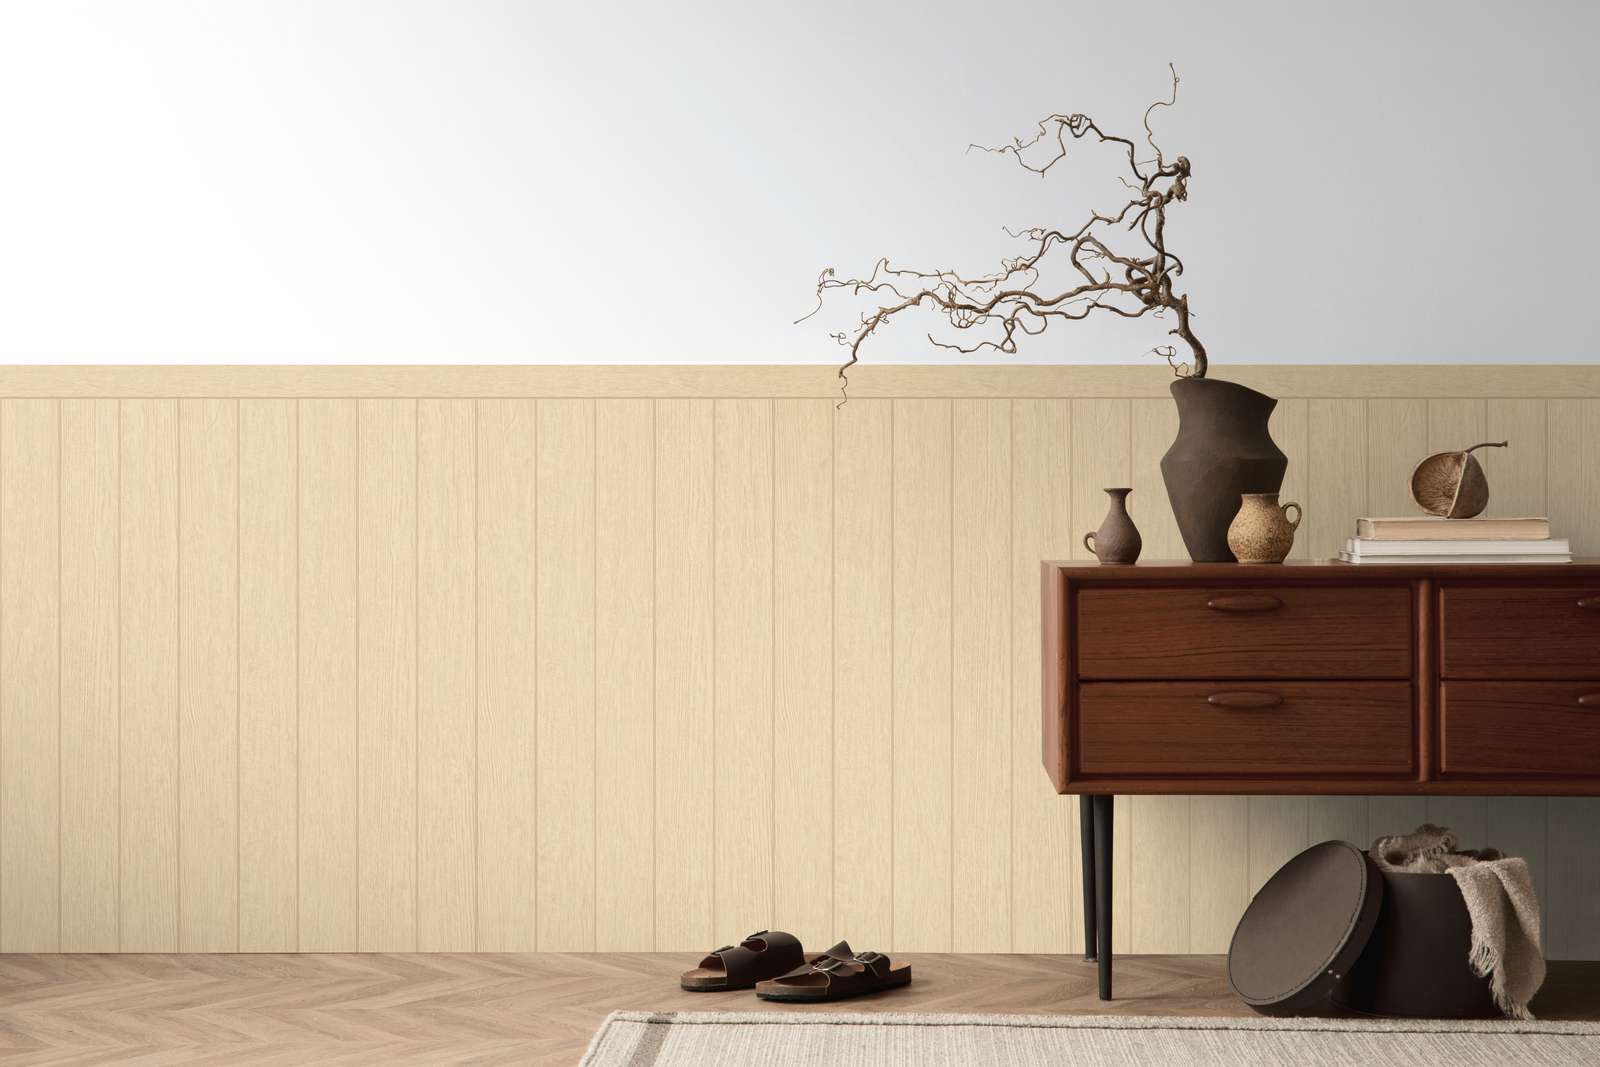             Pannello da parete in tessuto non tessuto con aspetto di travi in legno - beige, marrone
        